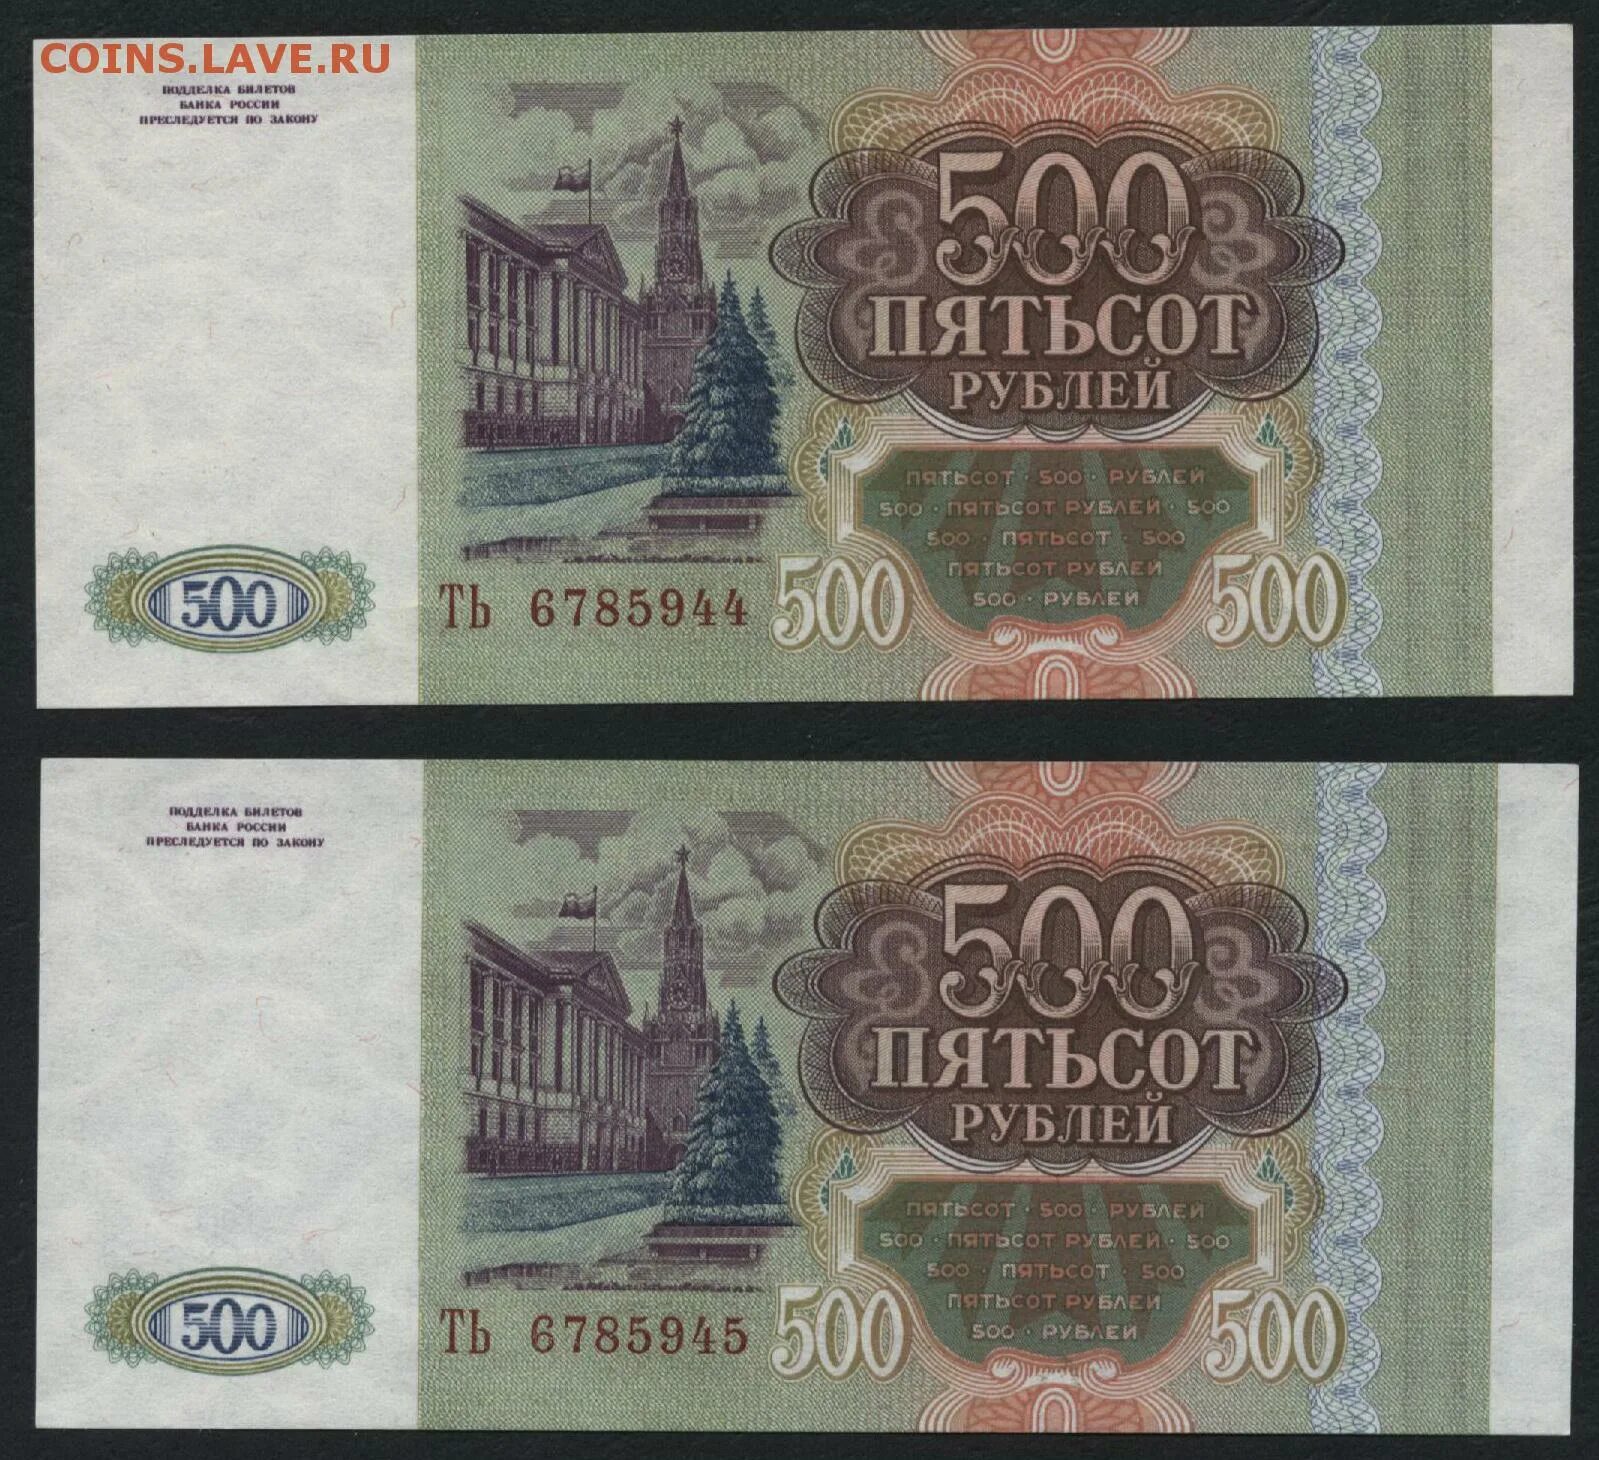 Пятьсот пять рублей. 500 Рублей. 500 Рублей 1993. Пятьсот рублей 1993. 500 Рублей 1993 года.